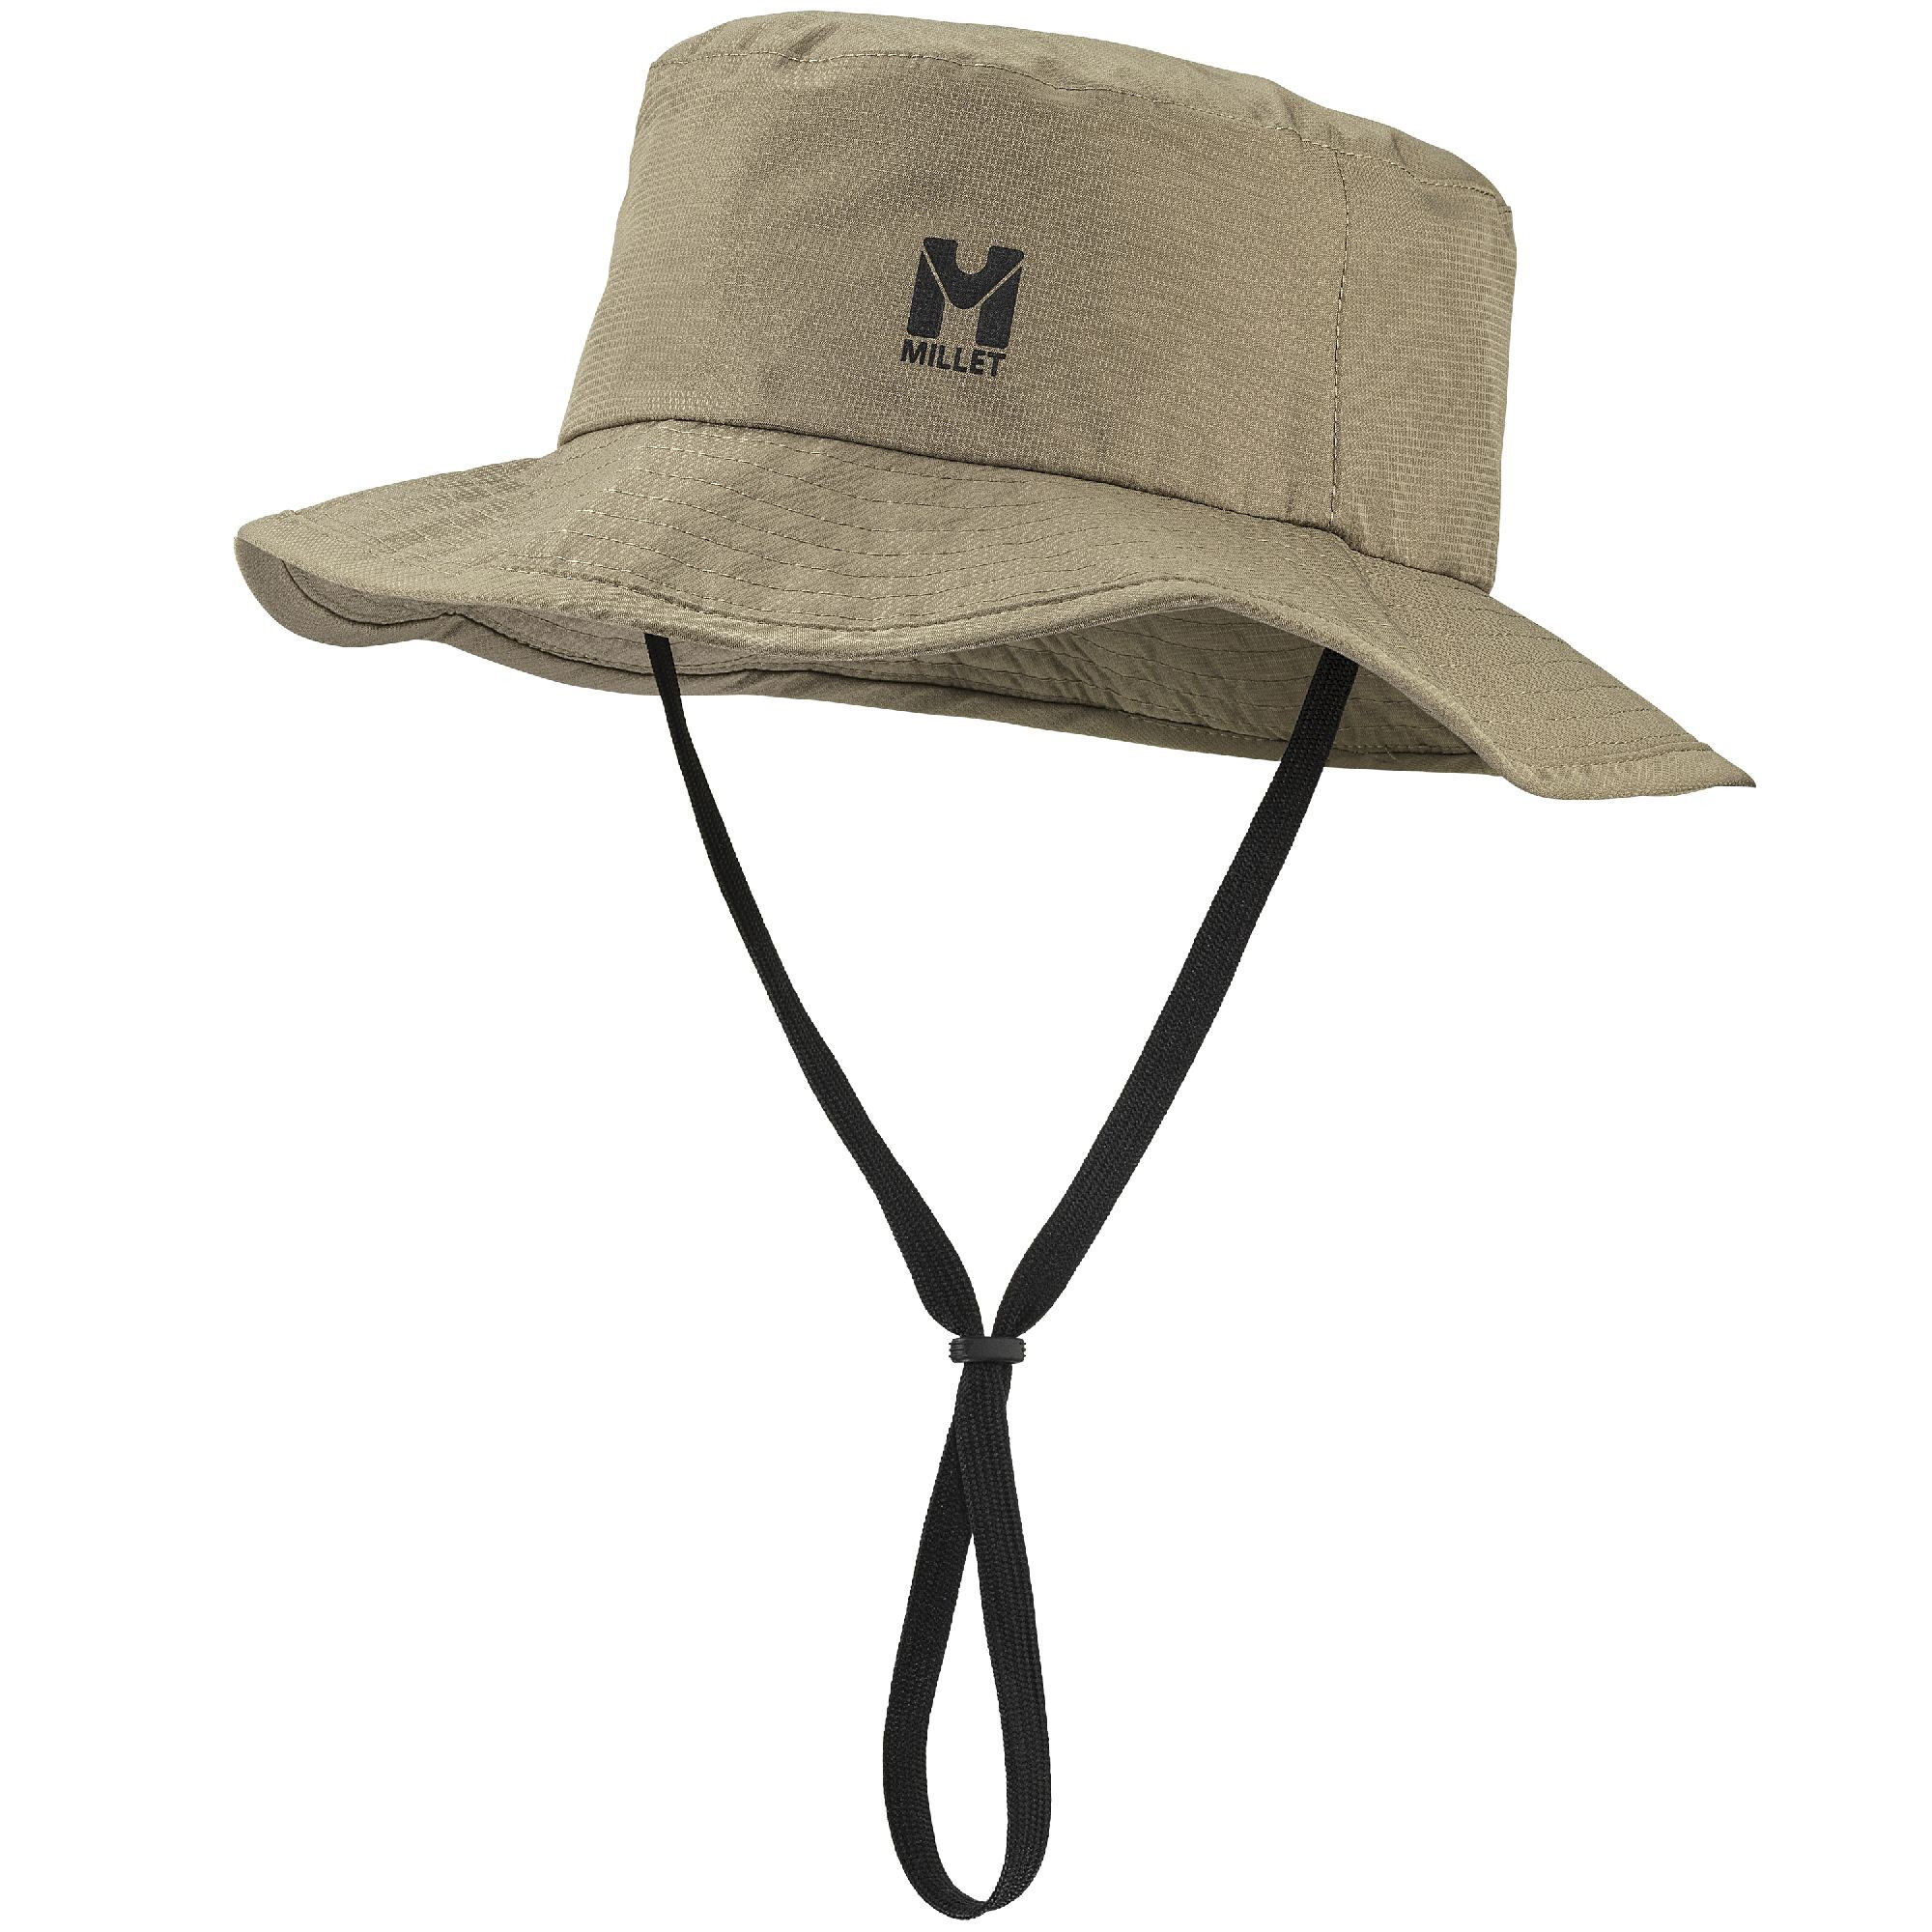 Millet Rainproof Hat - Hat